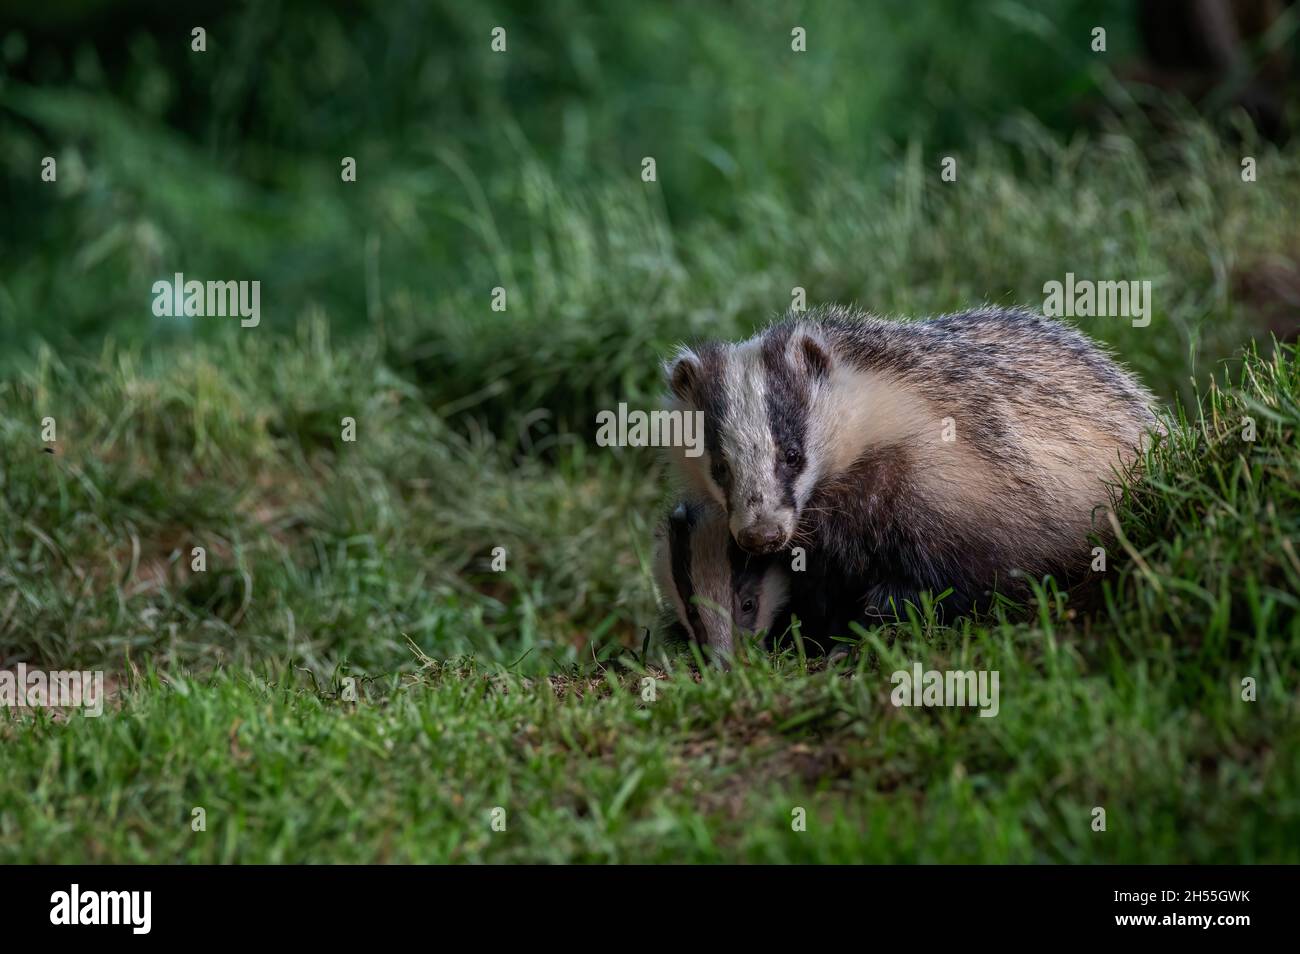 Badger, Meles meles Stock Photo